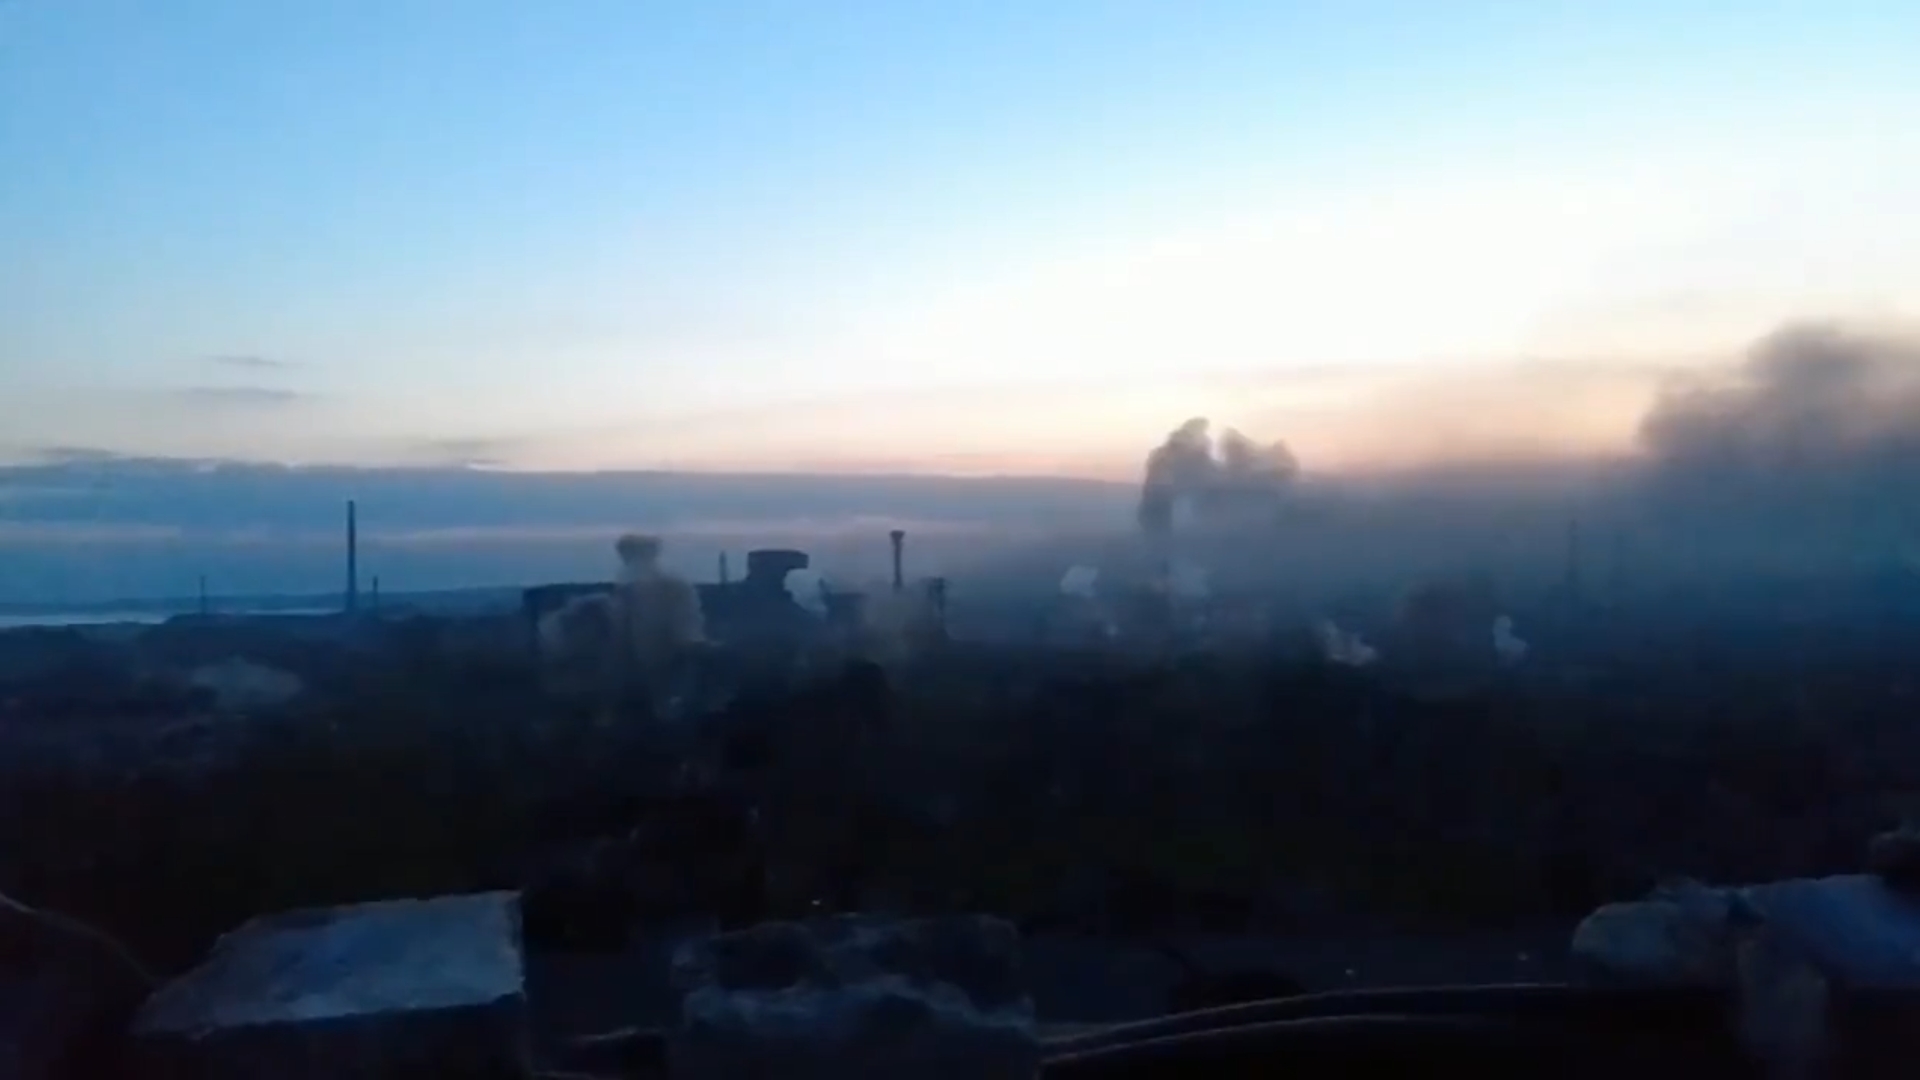 Ukraińscy żołnierze opuszczają kombinat Azowstal w Mariupolu, którego bronili od przeszło dwóch miesięcy.